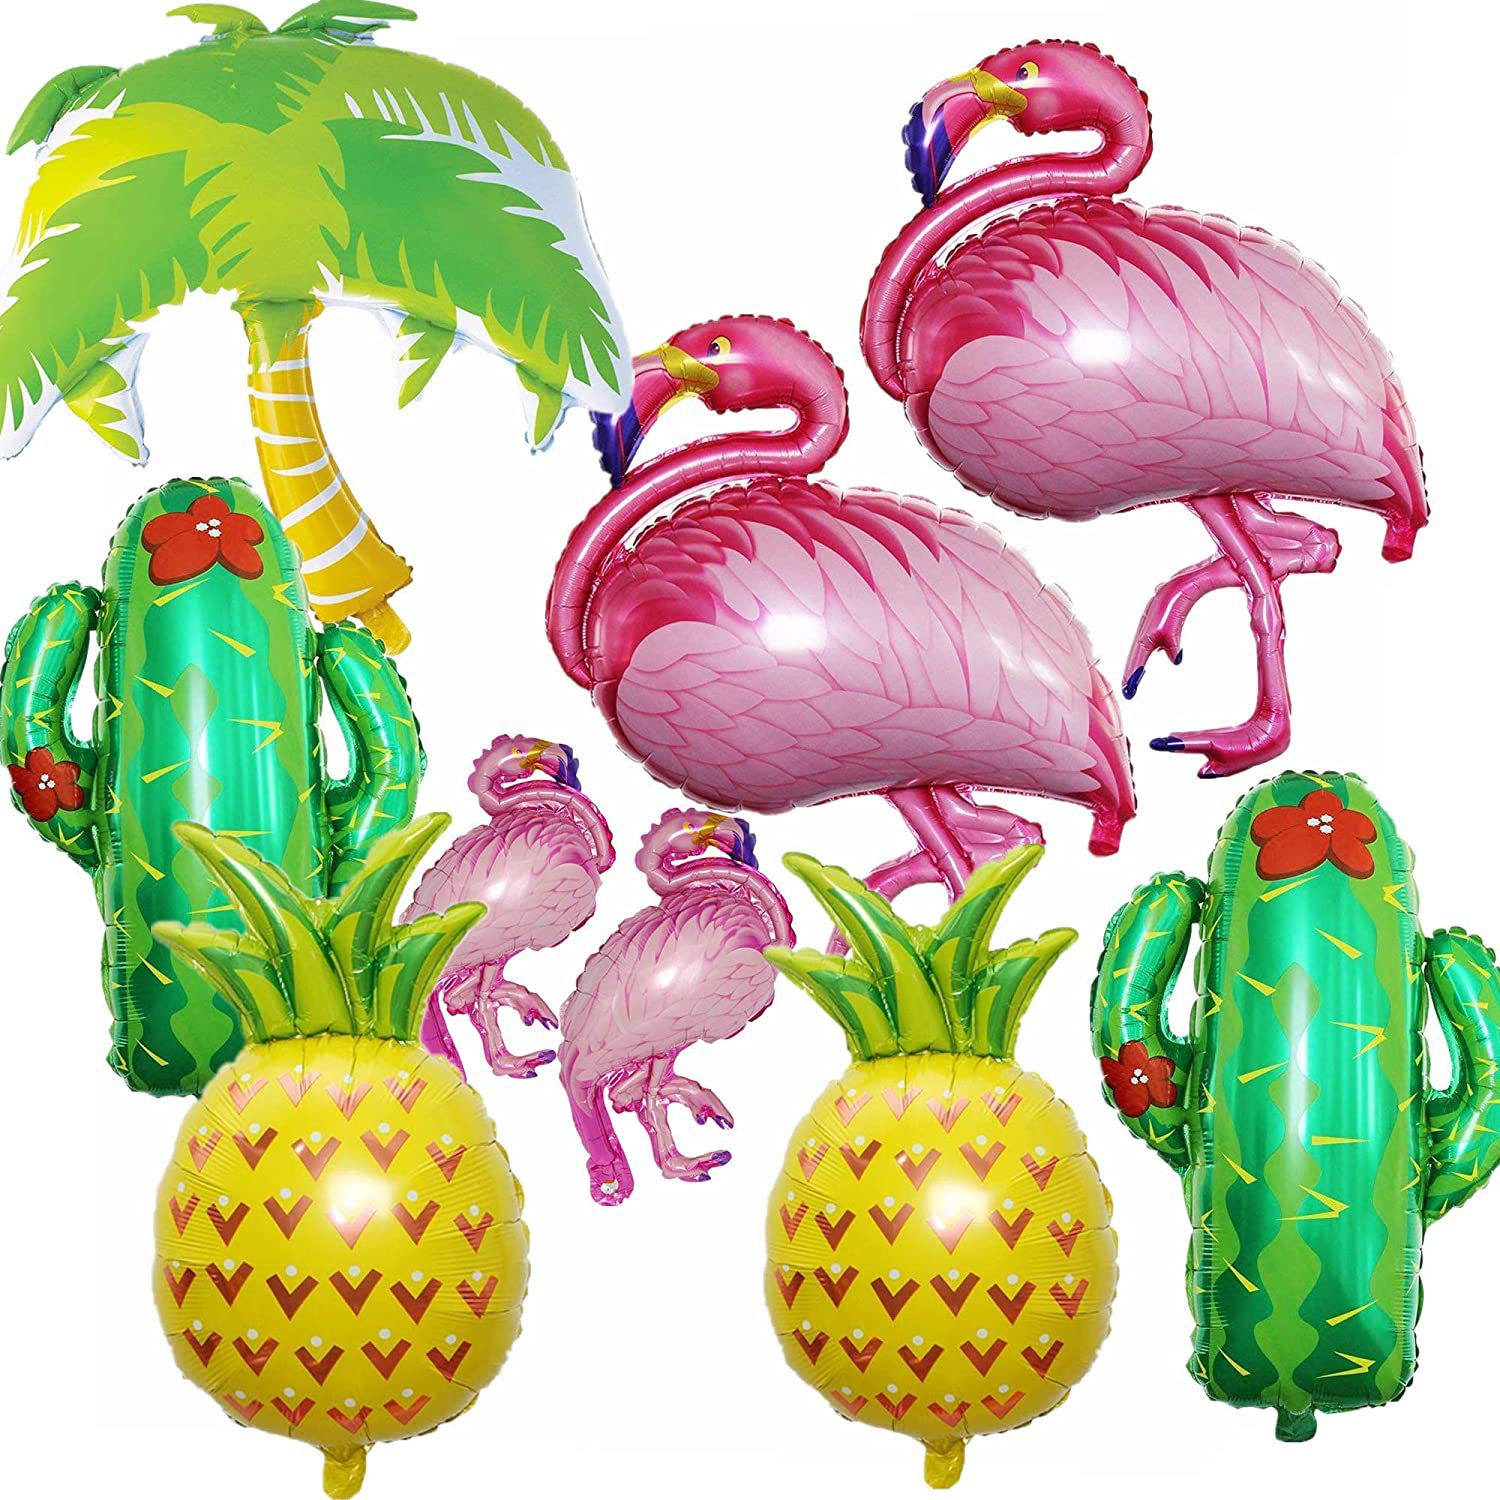 火烈鸟菠萝仙人掌椰子树叶铝膜气球组合夏威夷沙滩主题派对气球